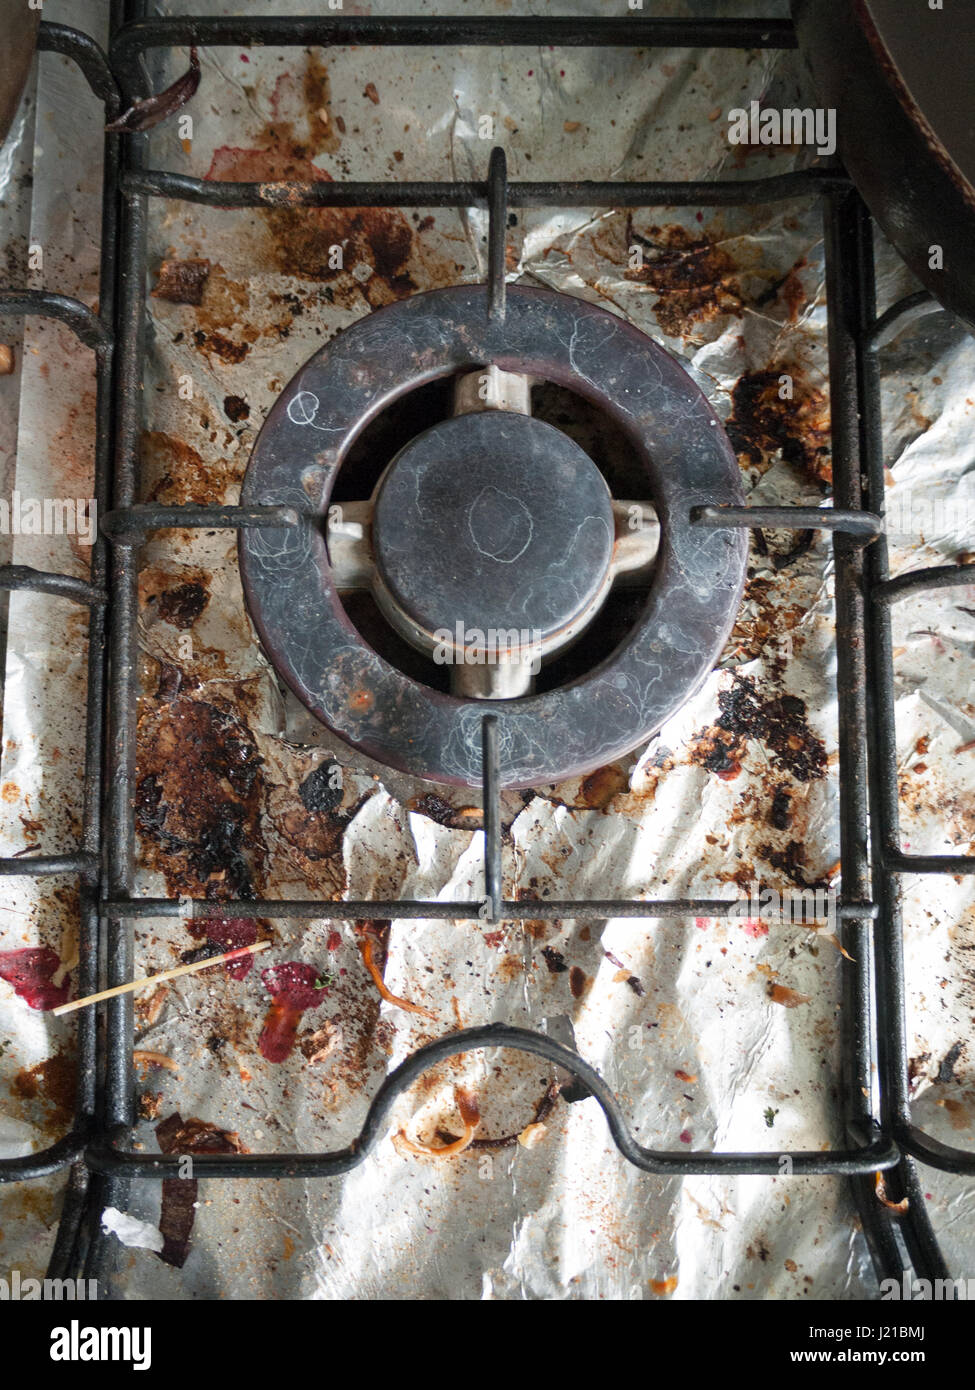 Las sucias y asquerosas y oxidada Top de cocina de gas vitrocerámica con  bits de debajo de la lámina metálica con trozos de alimentos y el Alto  Detaul brilla con grietas y